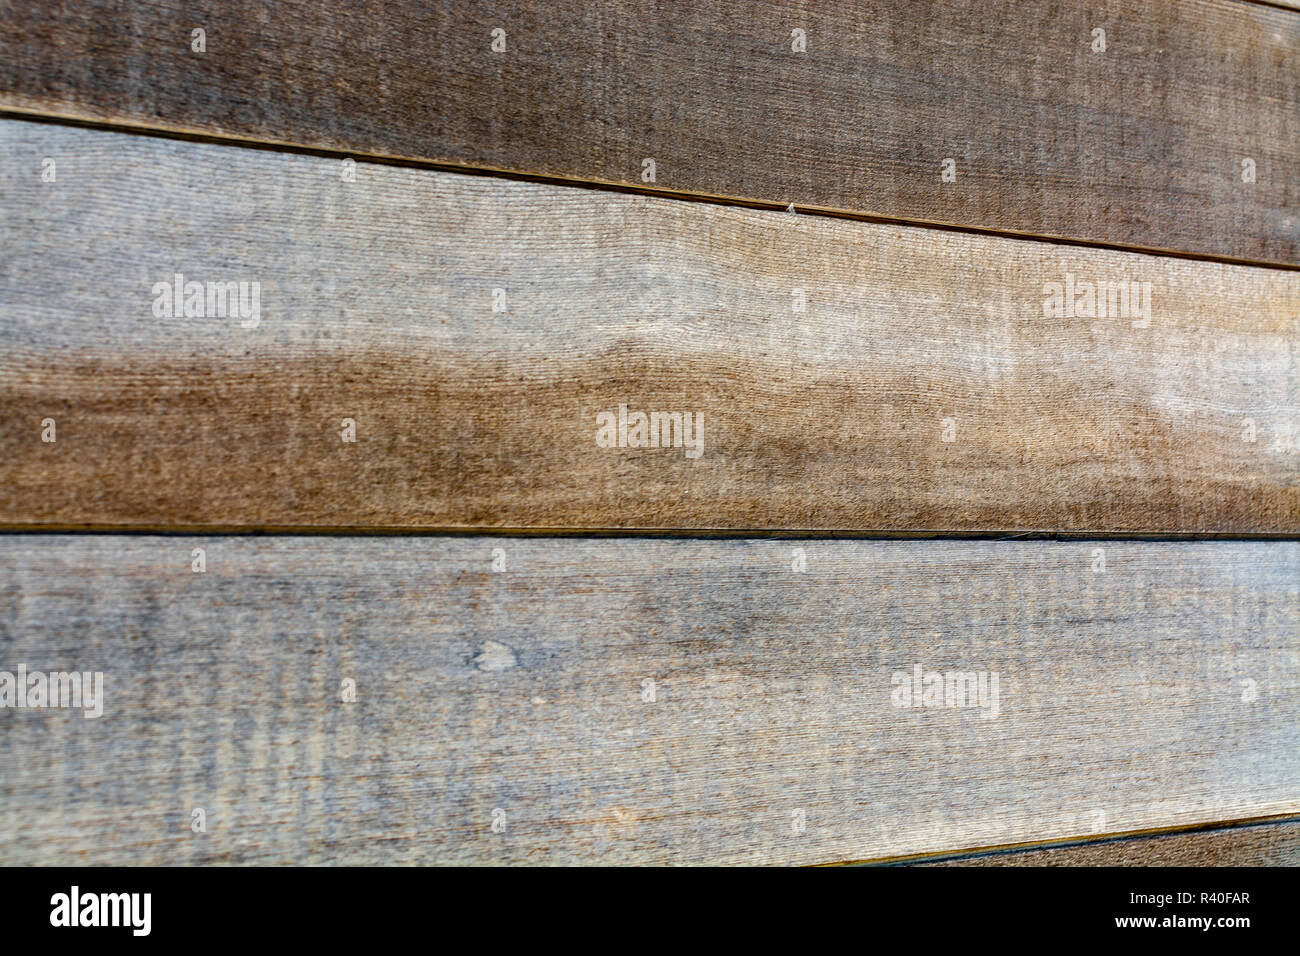 Hintergrund Textur von rustikalen braun Hartholz mit einem unverwechselbaren Holz Maserung für eine design Vorlage in einem full frame Querformat Stockfoto